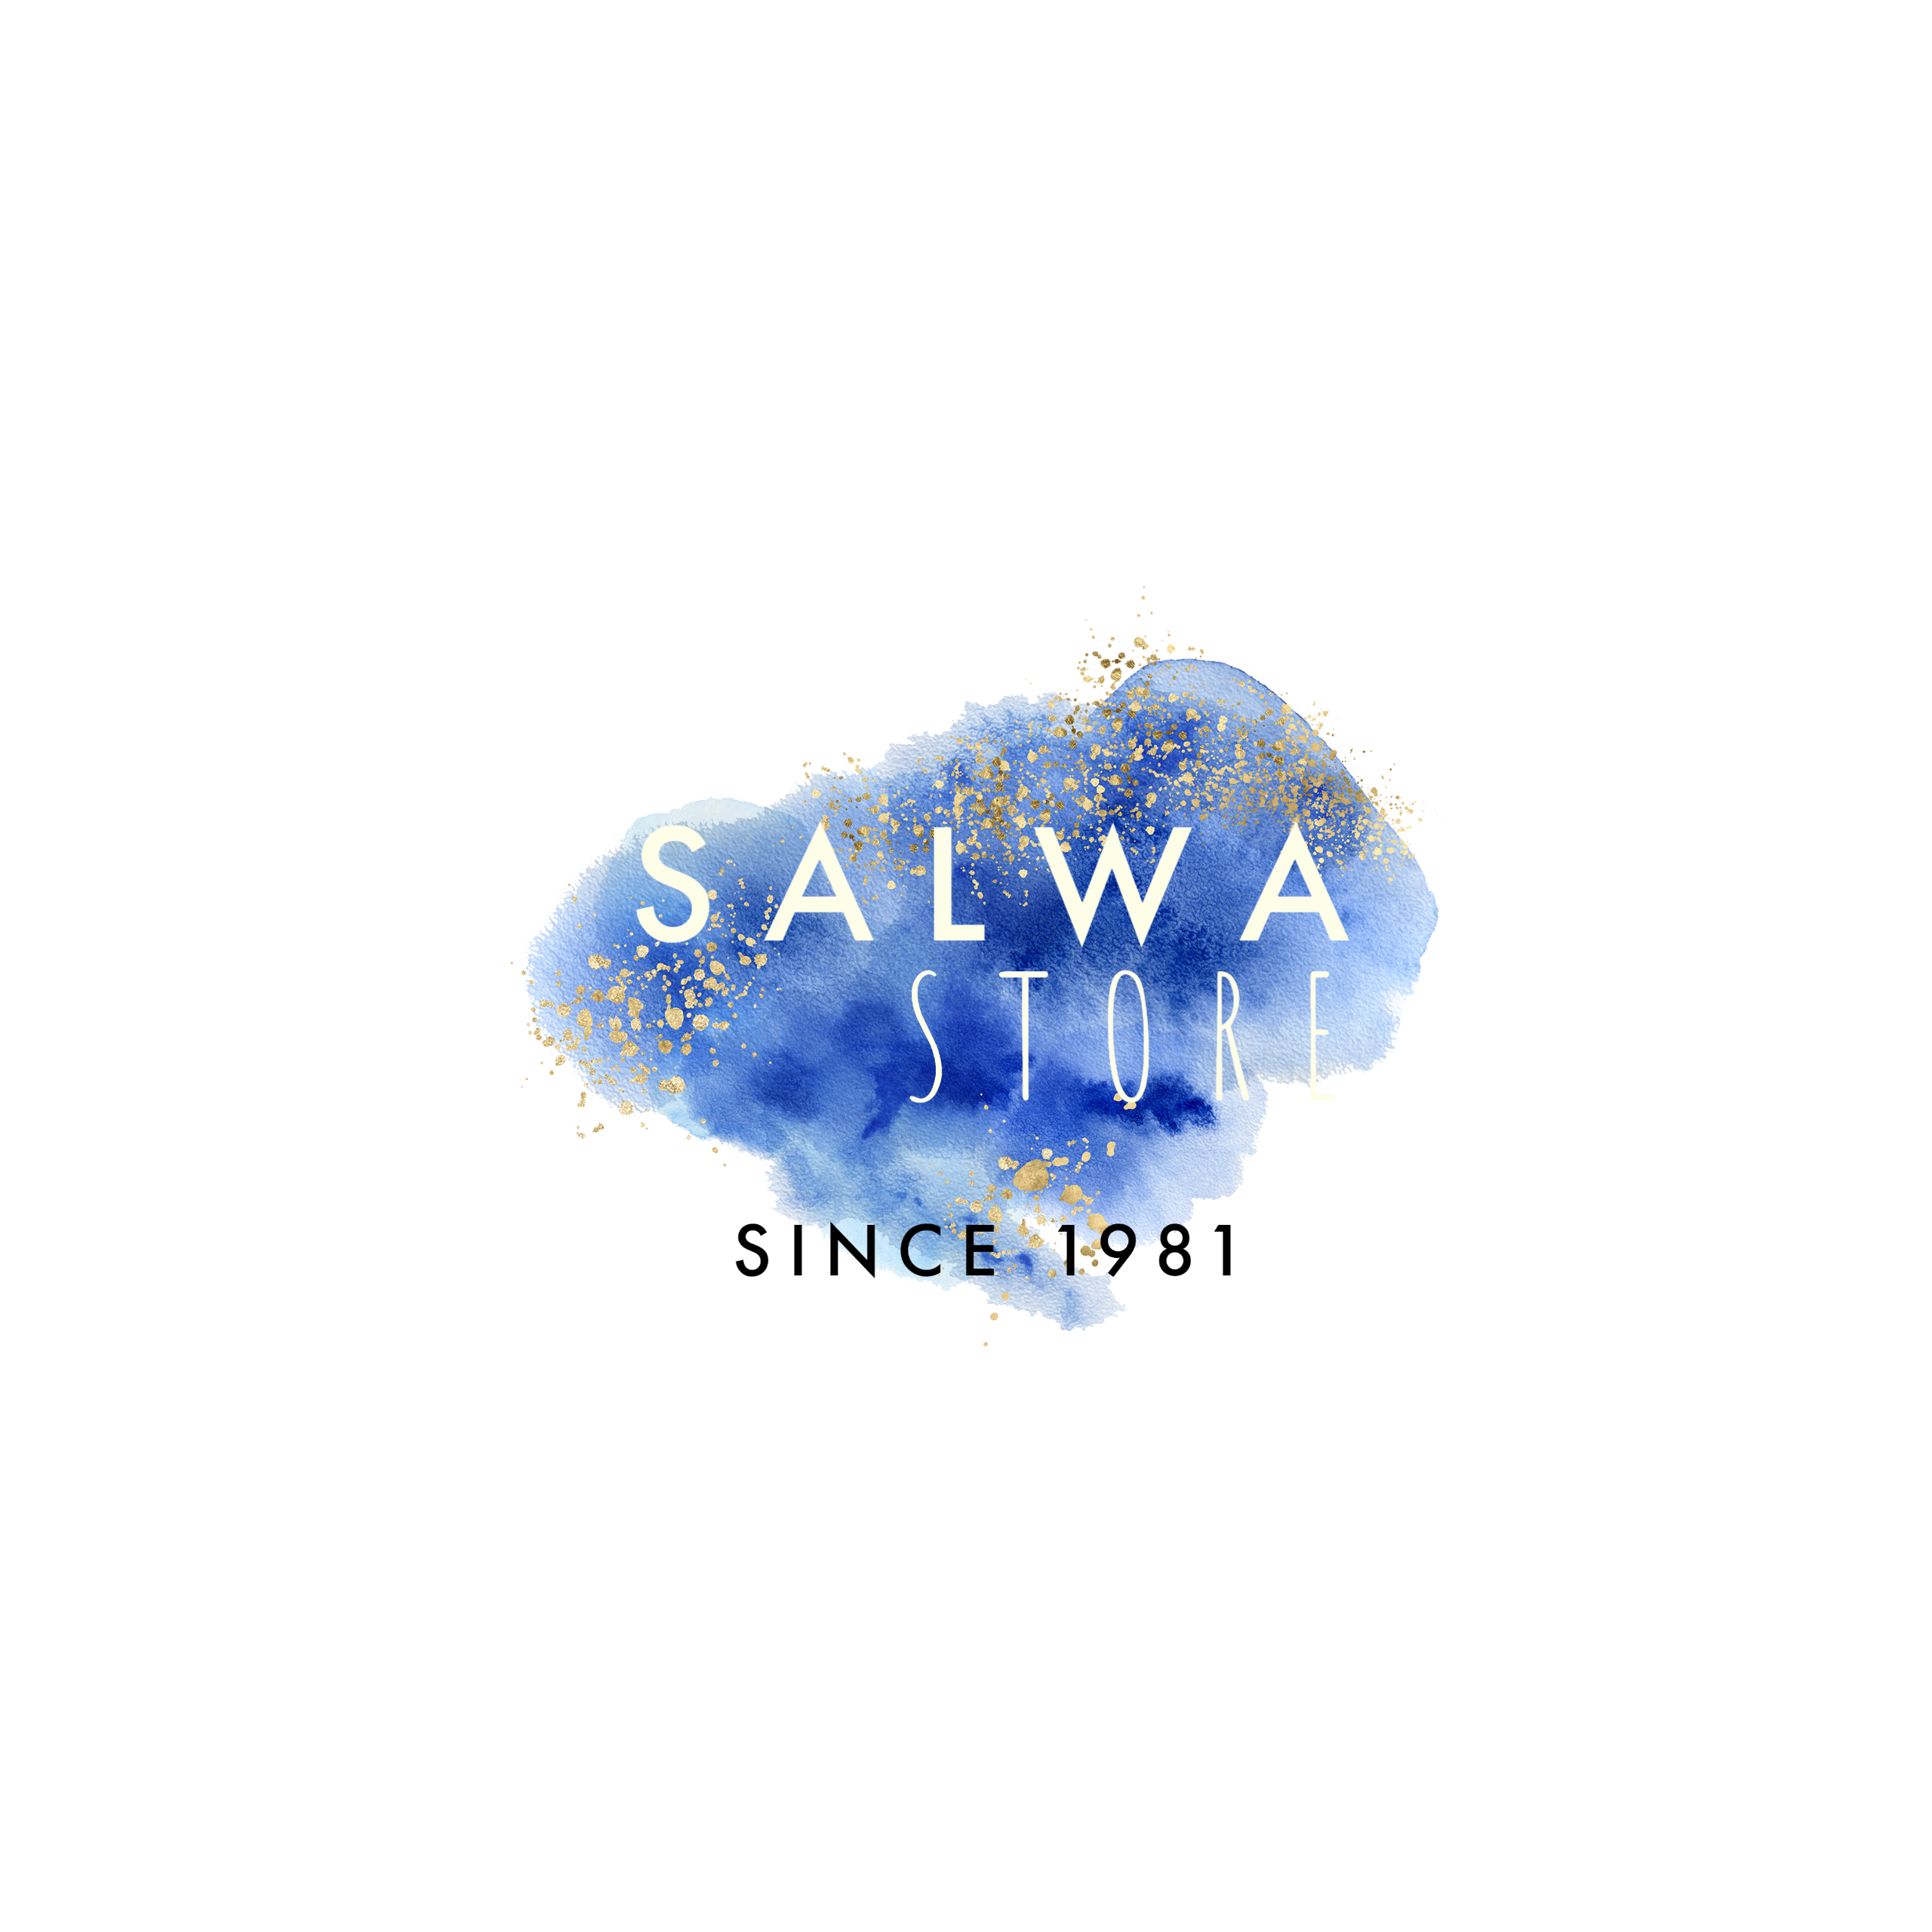 Salwa Store